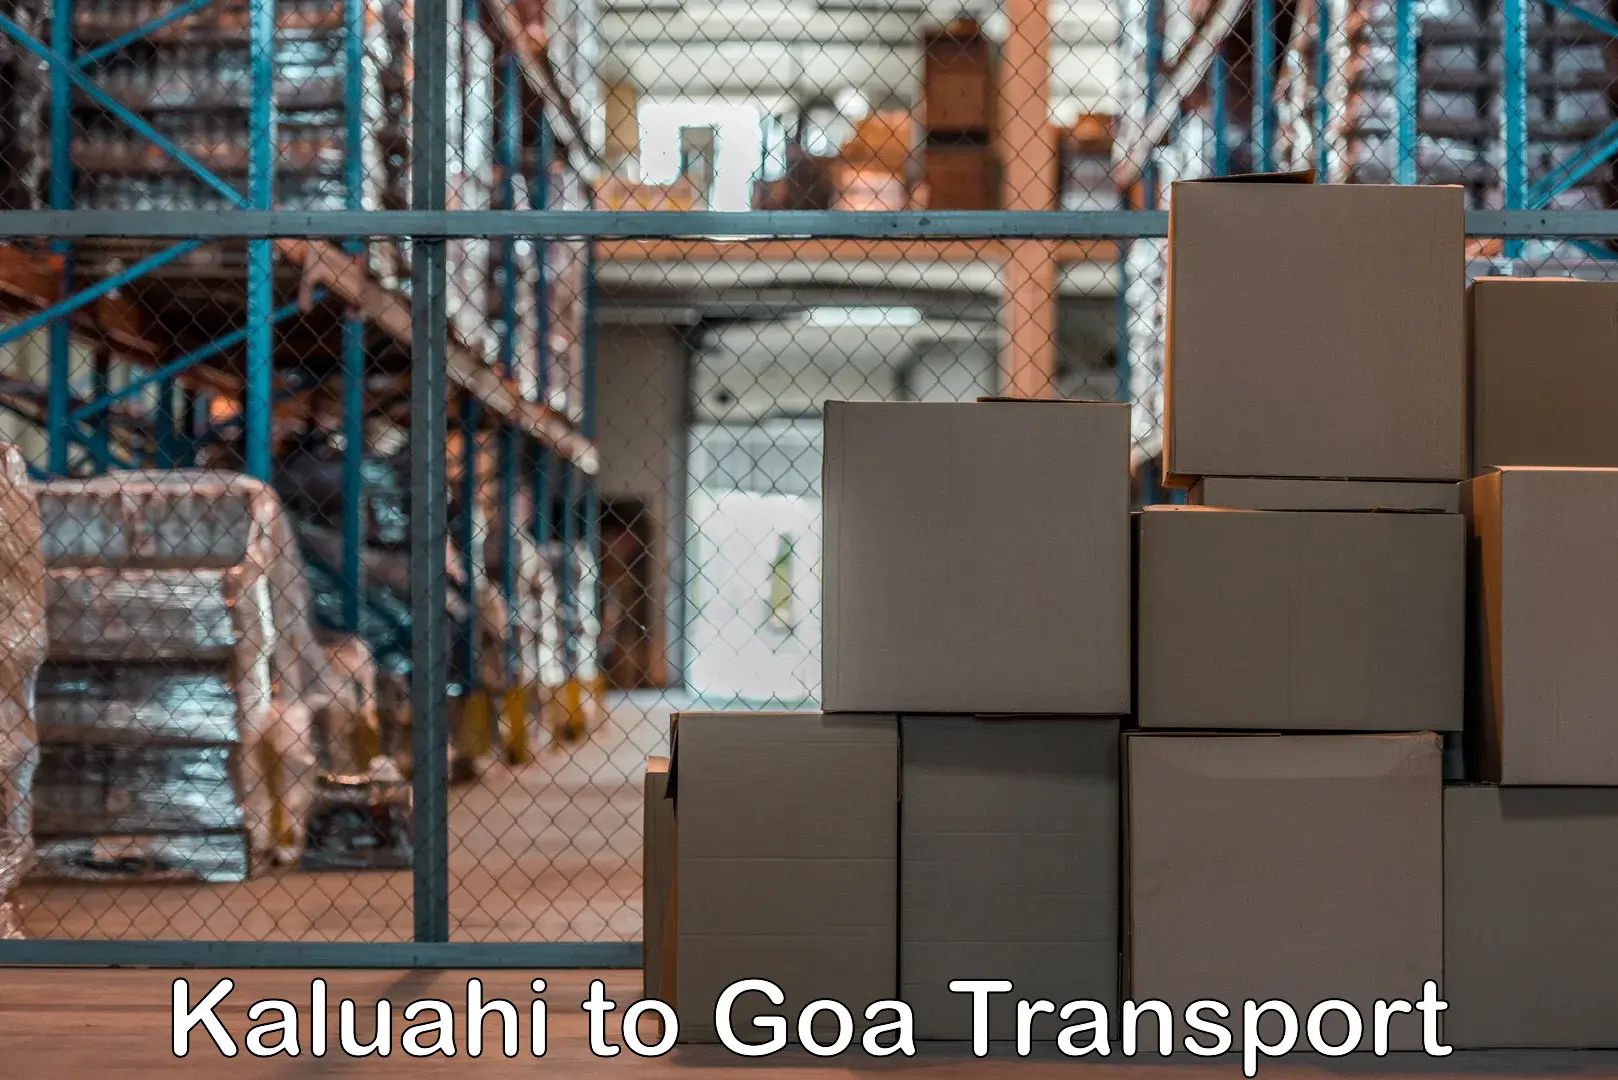 Cargo transportation services Kaluahi to Goa